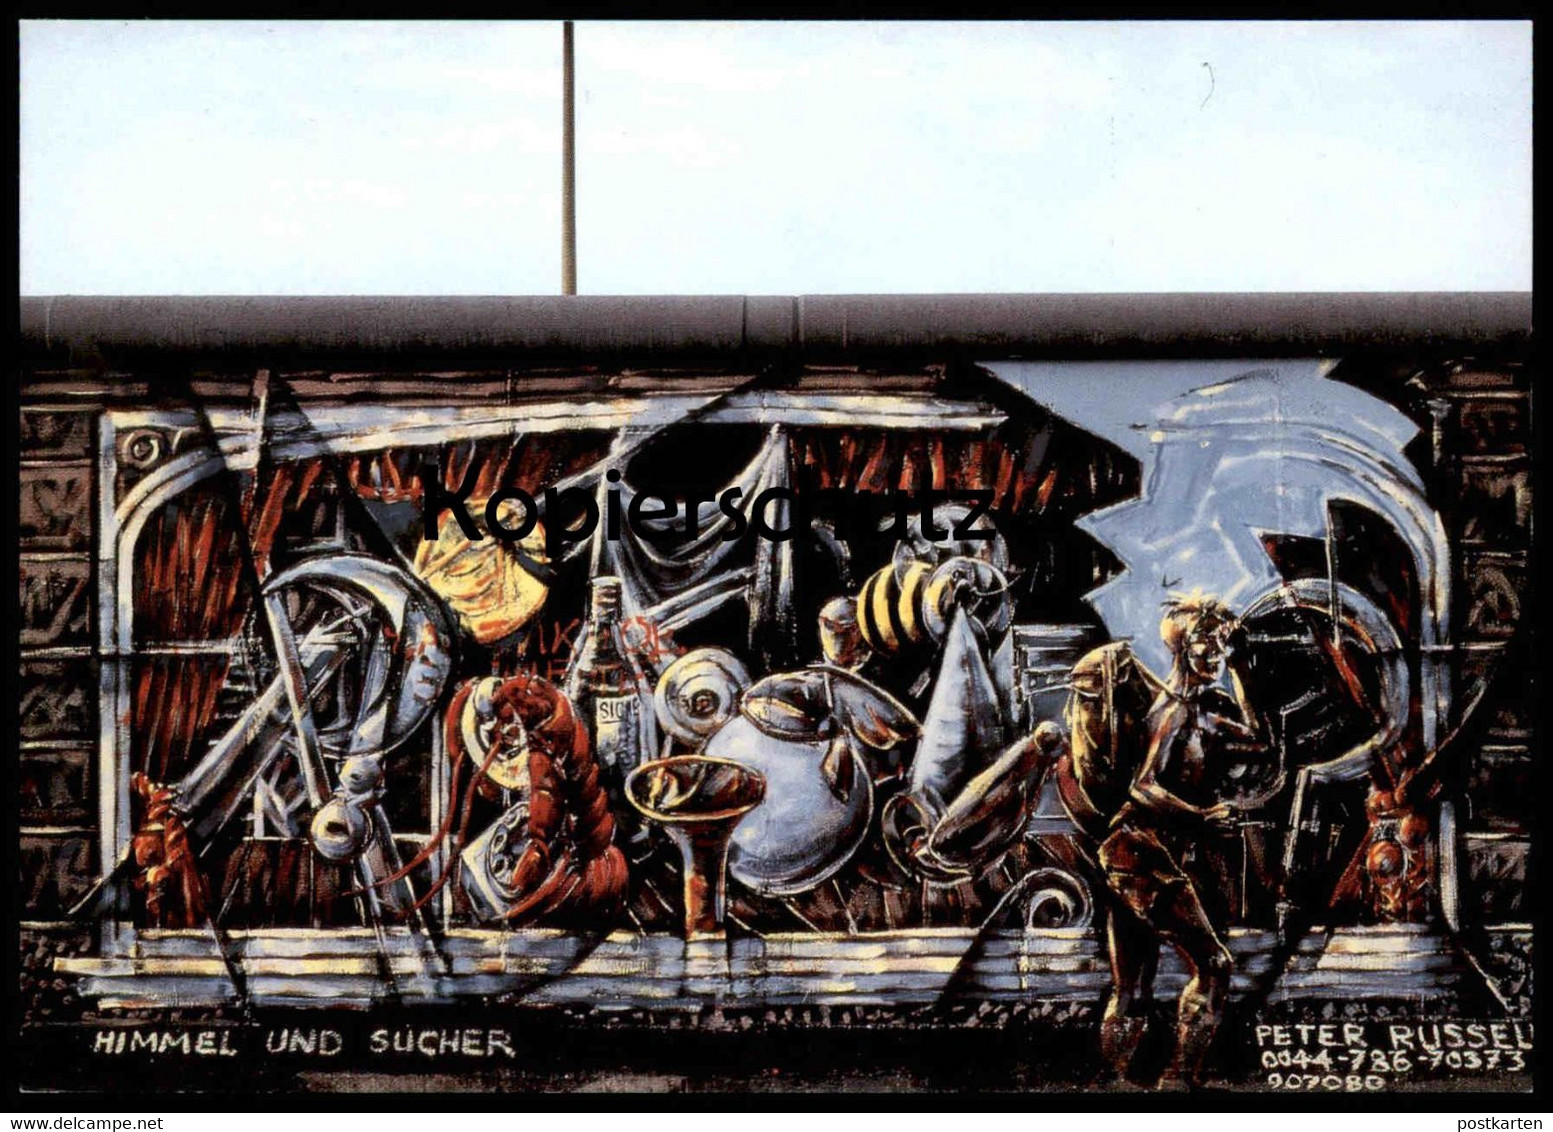 ÄLTERE POSTKARTE PETER RUSSELL HIMMEL UND SUCHER BERLINER MAUER THE WALL LE MUR BERLIN Art Postcard Cpa AK Ansichtskarte - Berliner Mauer